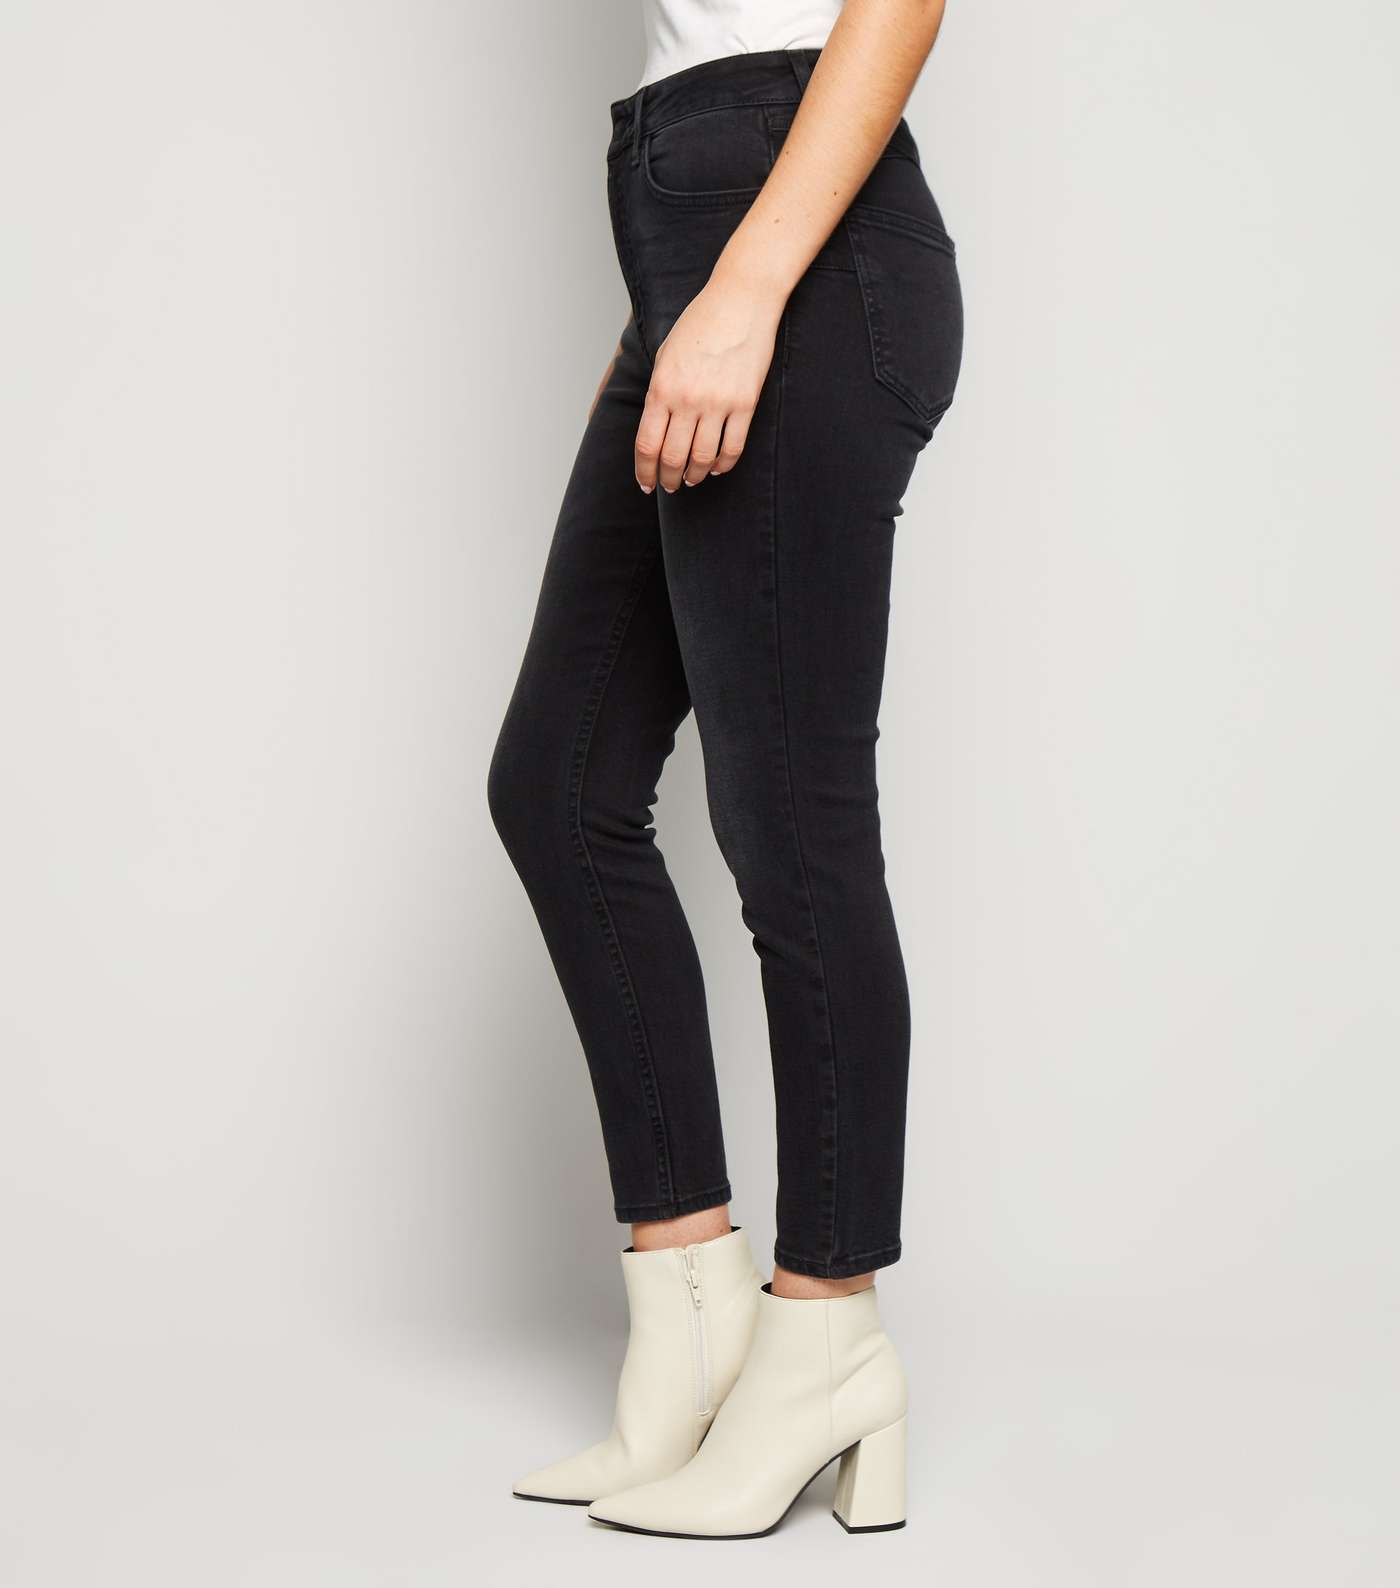 Petite Black 'Lift & Shape' Skinny Jeans Image 5